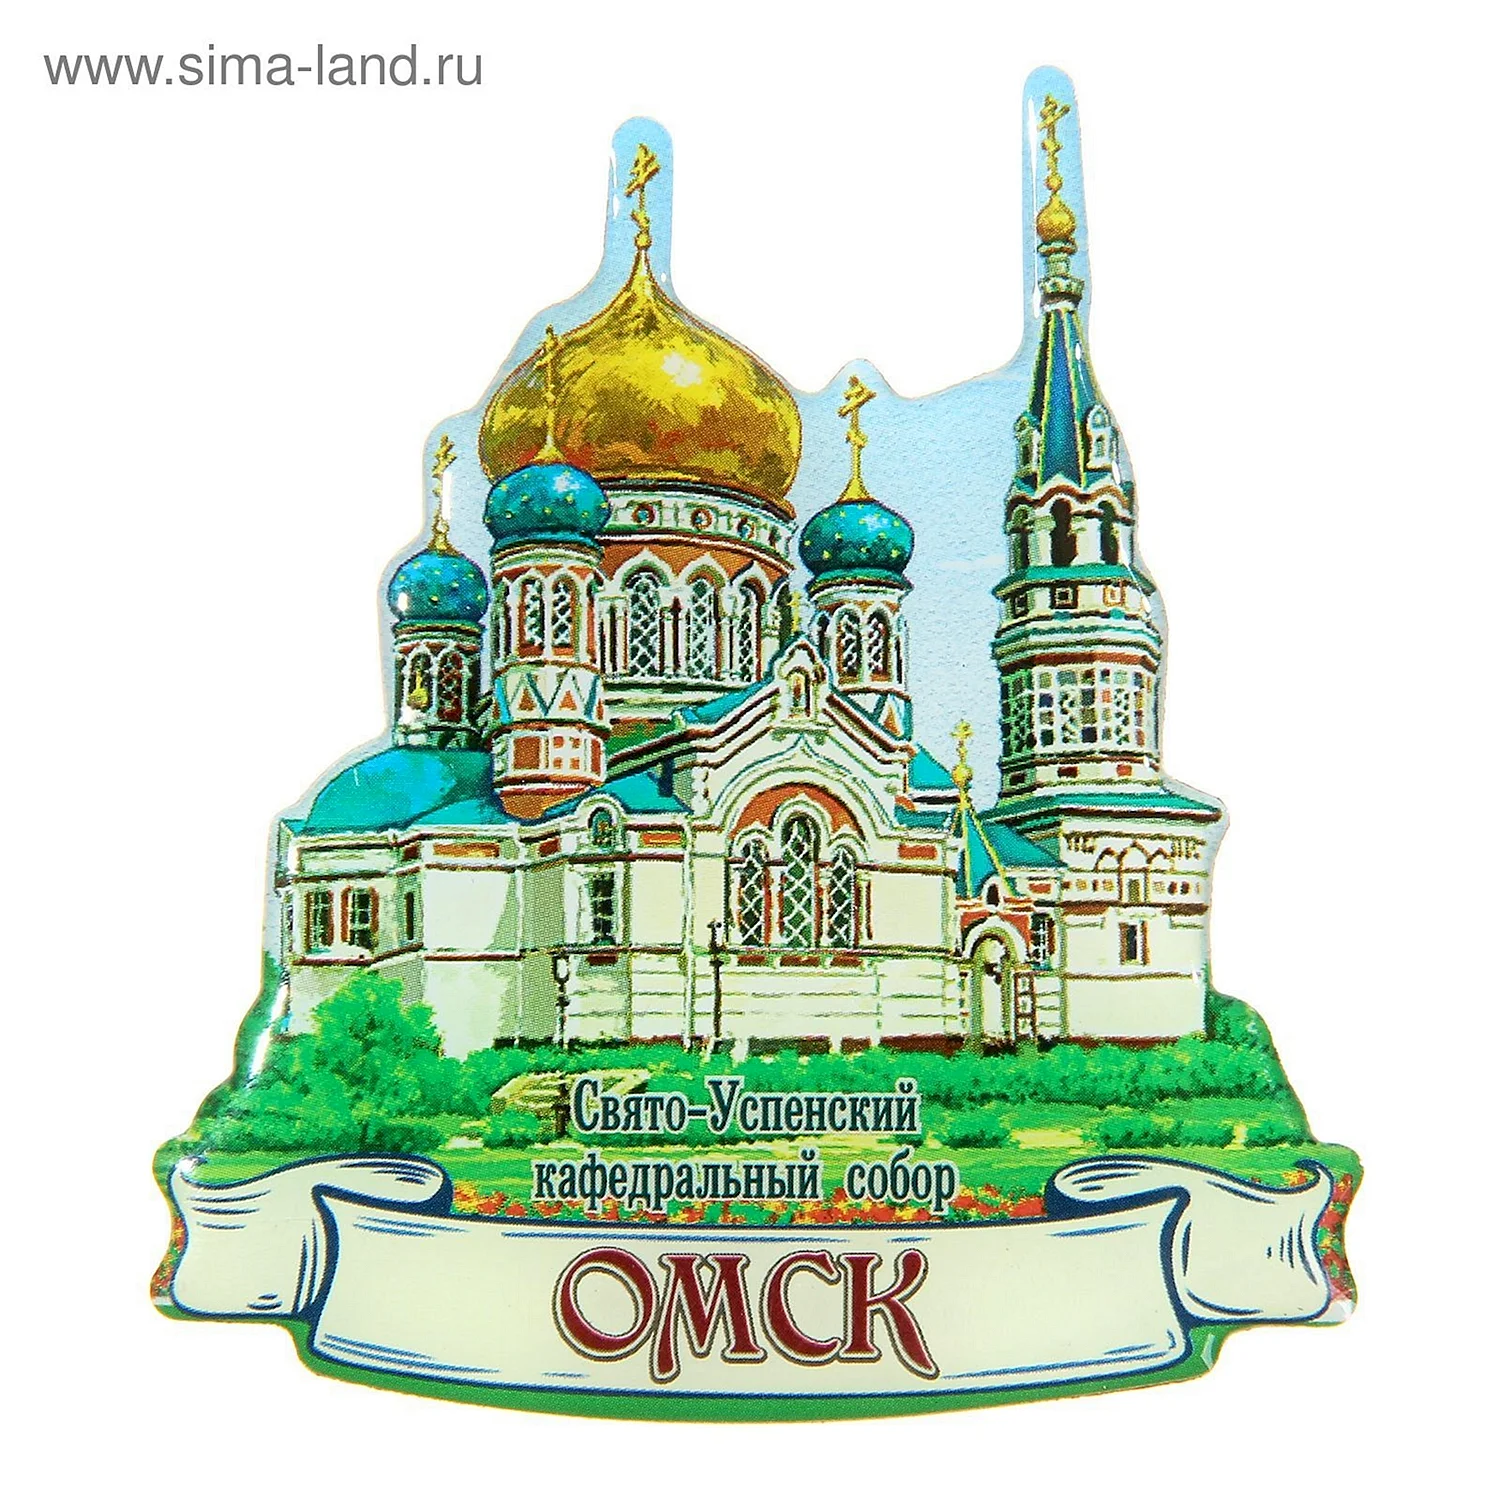 Успенский кафедральный собор Омск раскраска